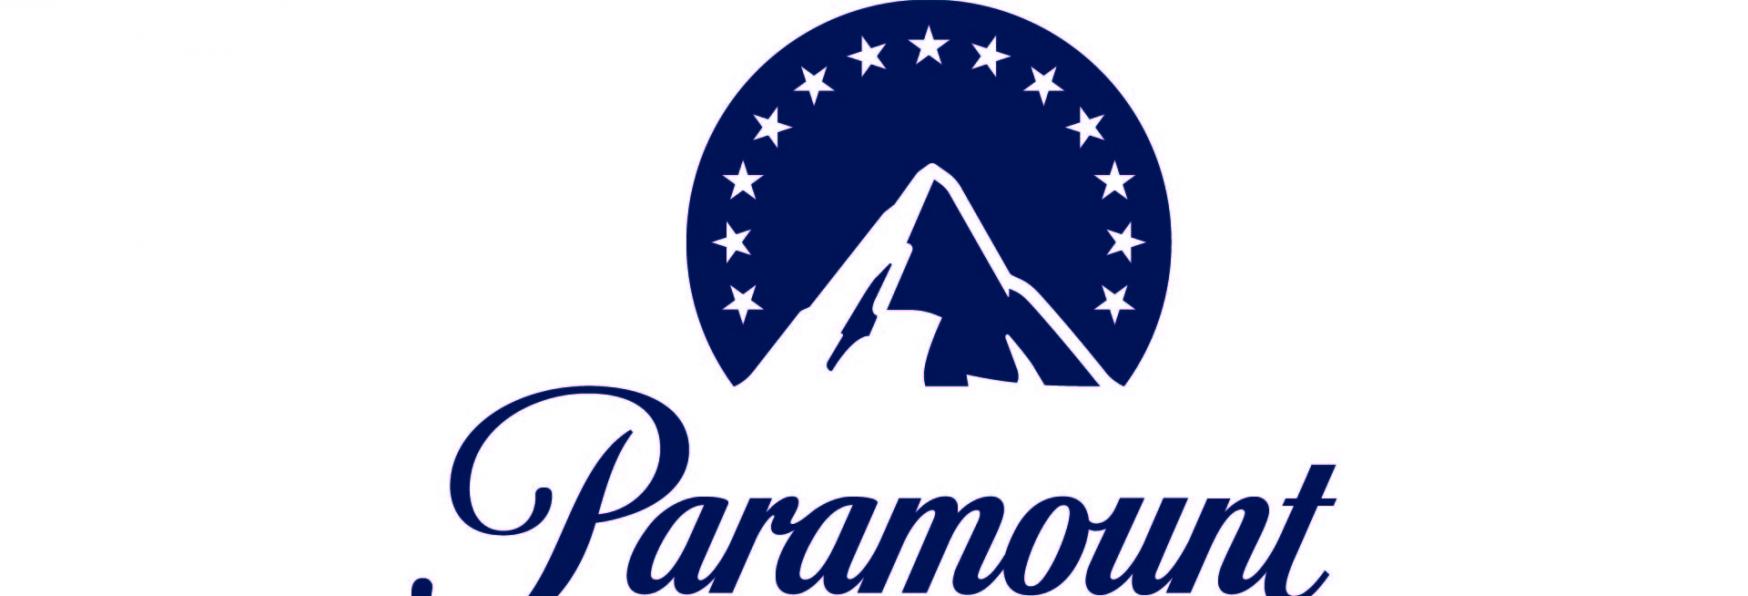 Ristrutturazione di Showtime in corso: Licenziati 120 Dipendenti dopo l'Integrazione di Paramount+